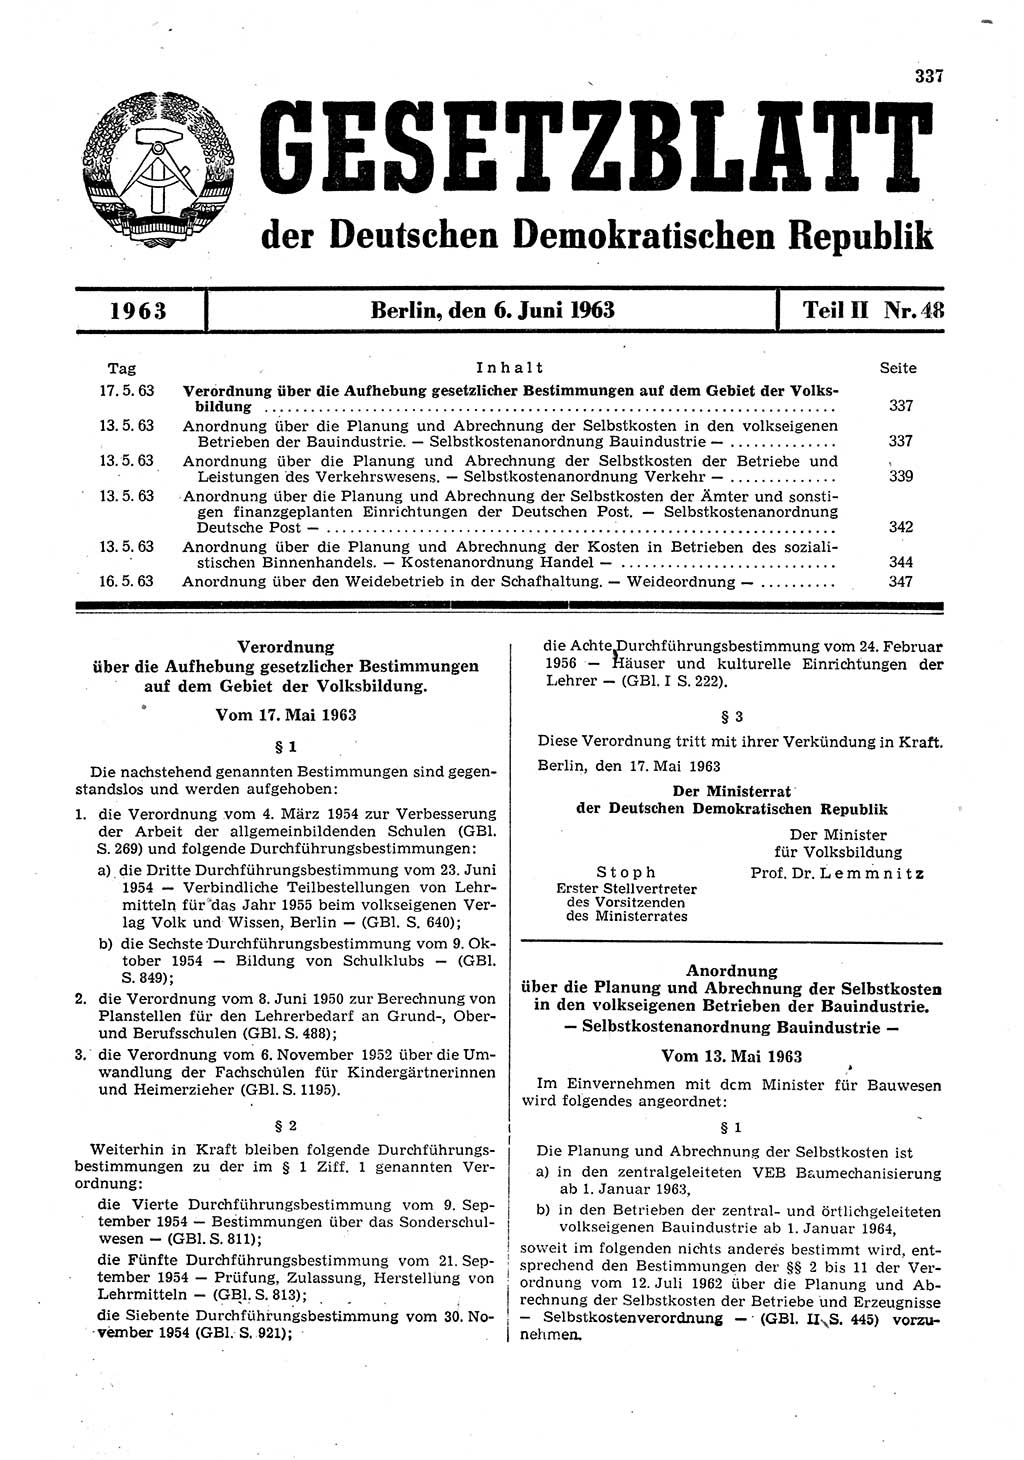 Gesetzblatt (GBl.) der Deutschen Demokratischen Republik (DDR) Teil ⅠⅠ 1963, Seite 337 (GBl. DDR ⅠⅠ 1963, S. 337)